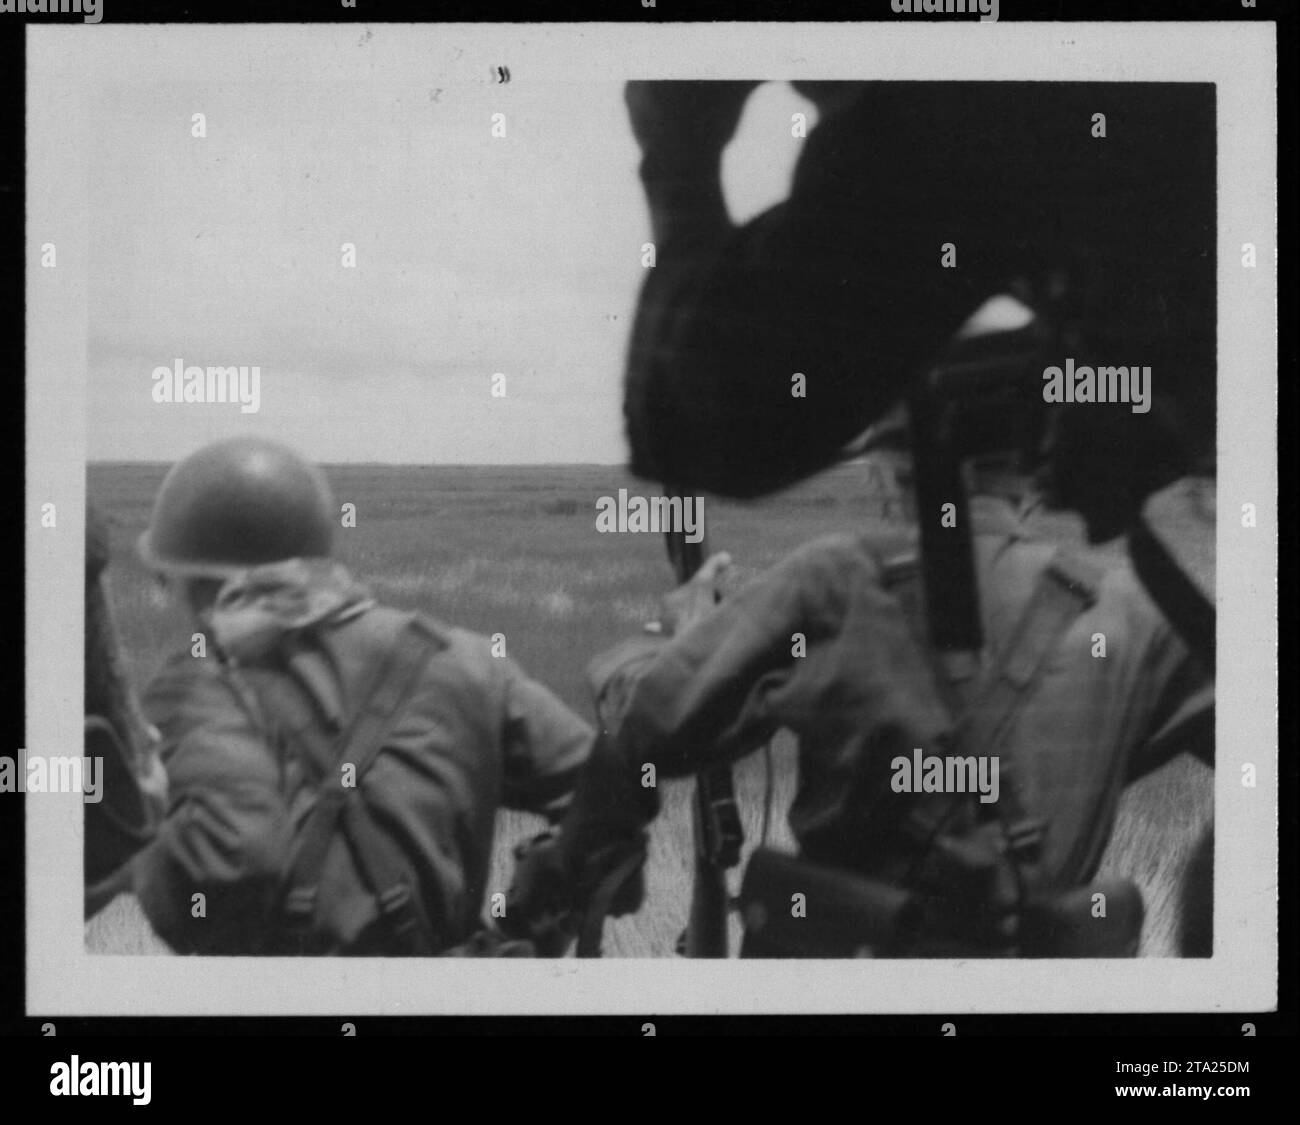 Les soldats de l'ARVN et les marines vietnamiens se réunissent pour une cérémonie officielle pendant la guerre du Vietnam le 26 juillet 1962. Cette image capture les membres de l'armée de la République du Vietnam, soulignant leur implication dans le conflit alors qu'ils se préparent à des activités militaires. Banque D'Images